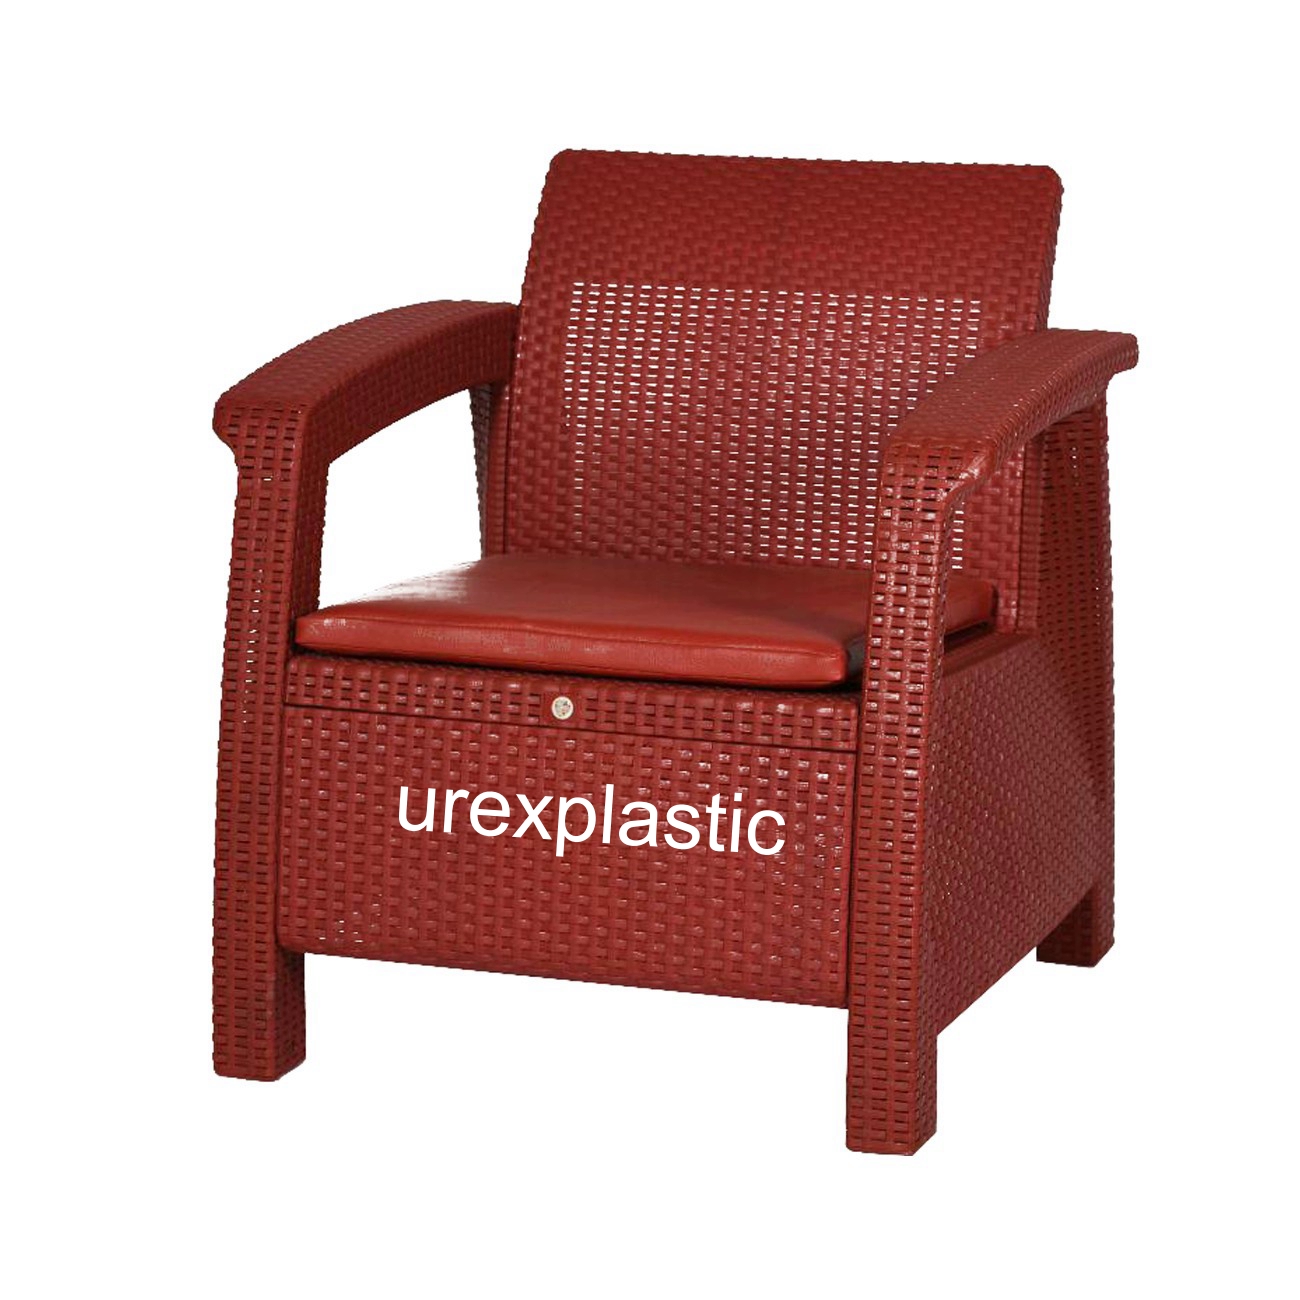 فروش صندلی حصیری پلاستیکی با کیفیت به قیمت تولید